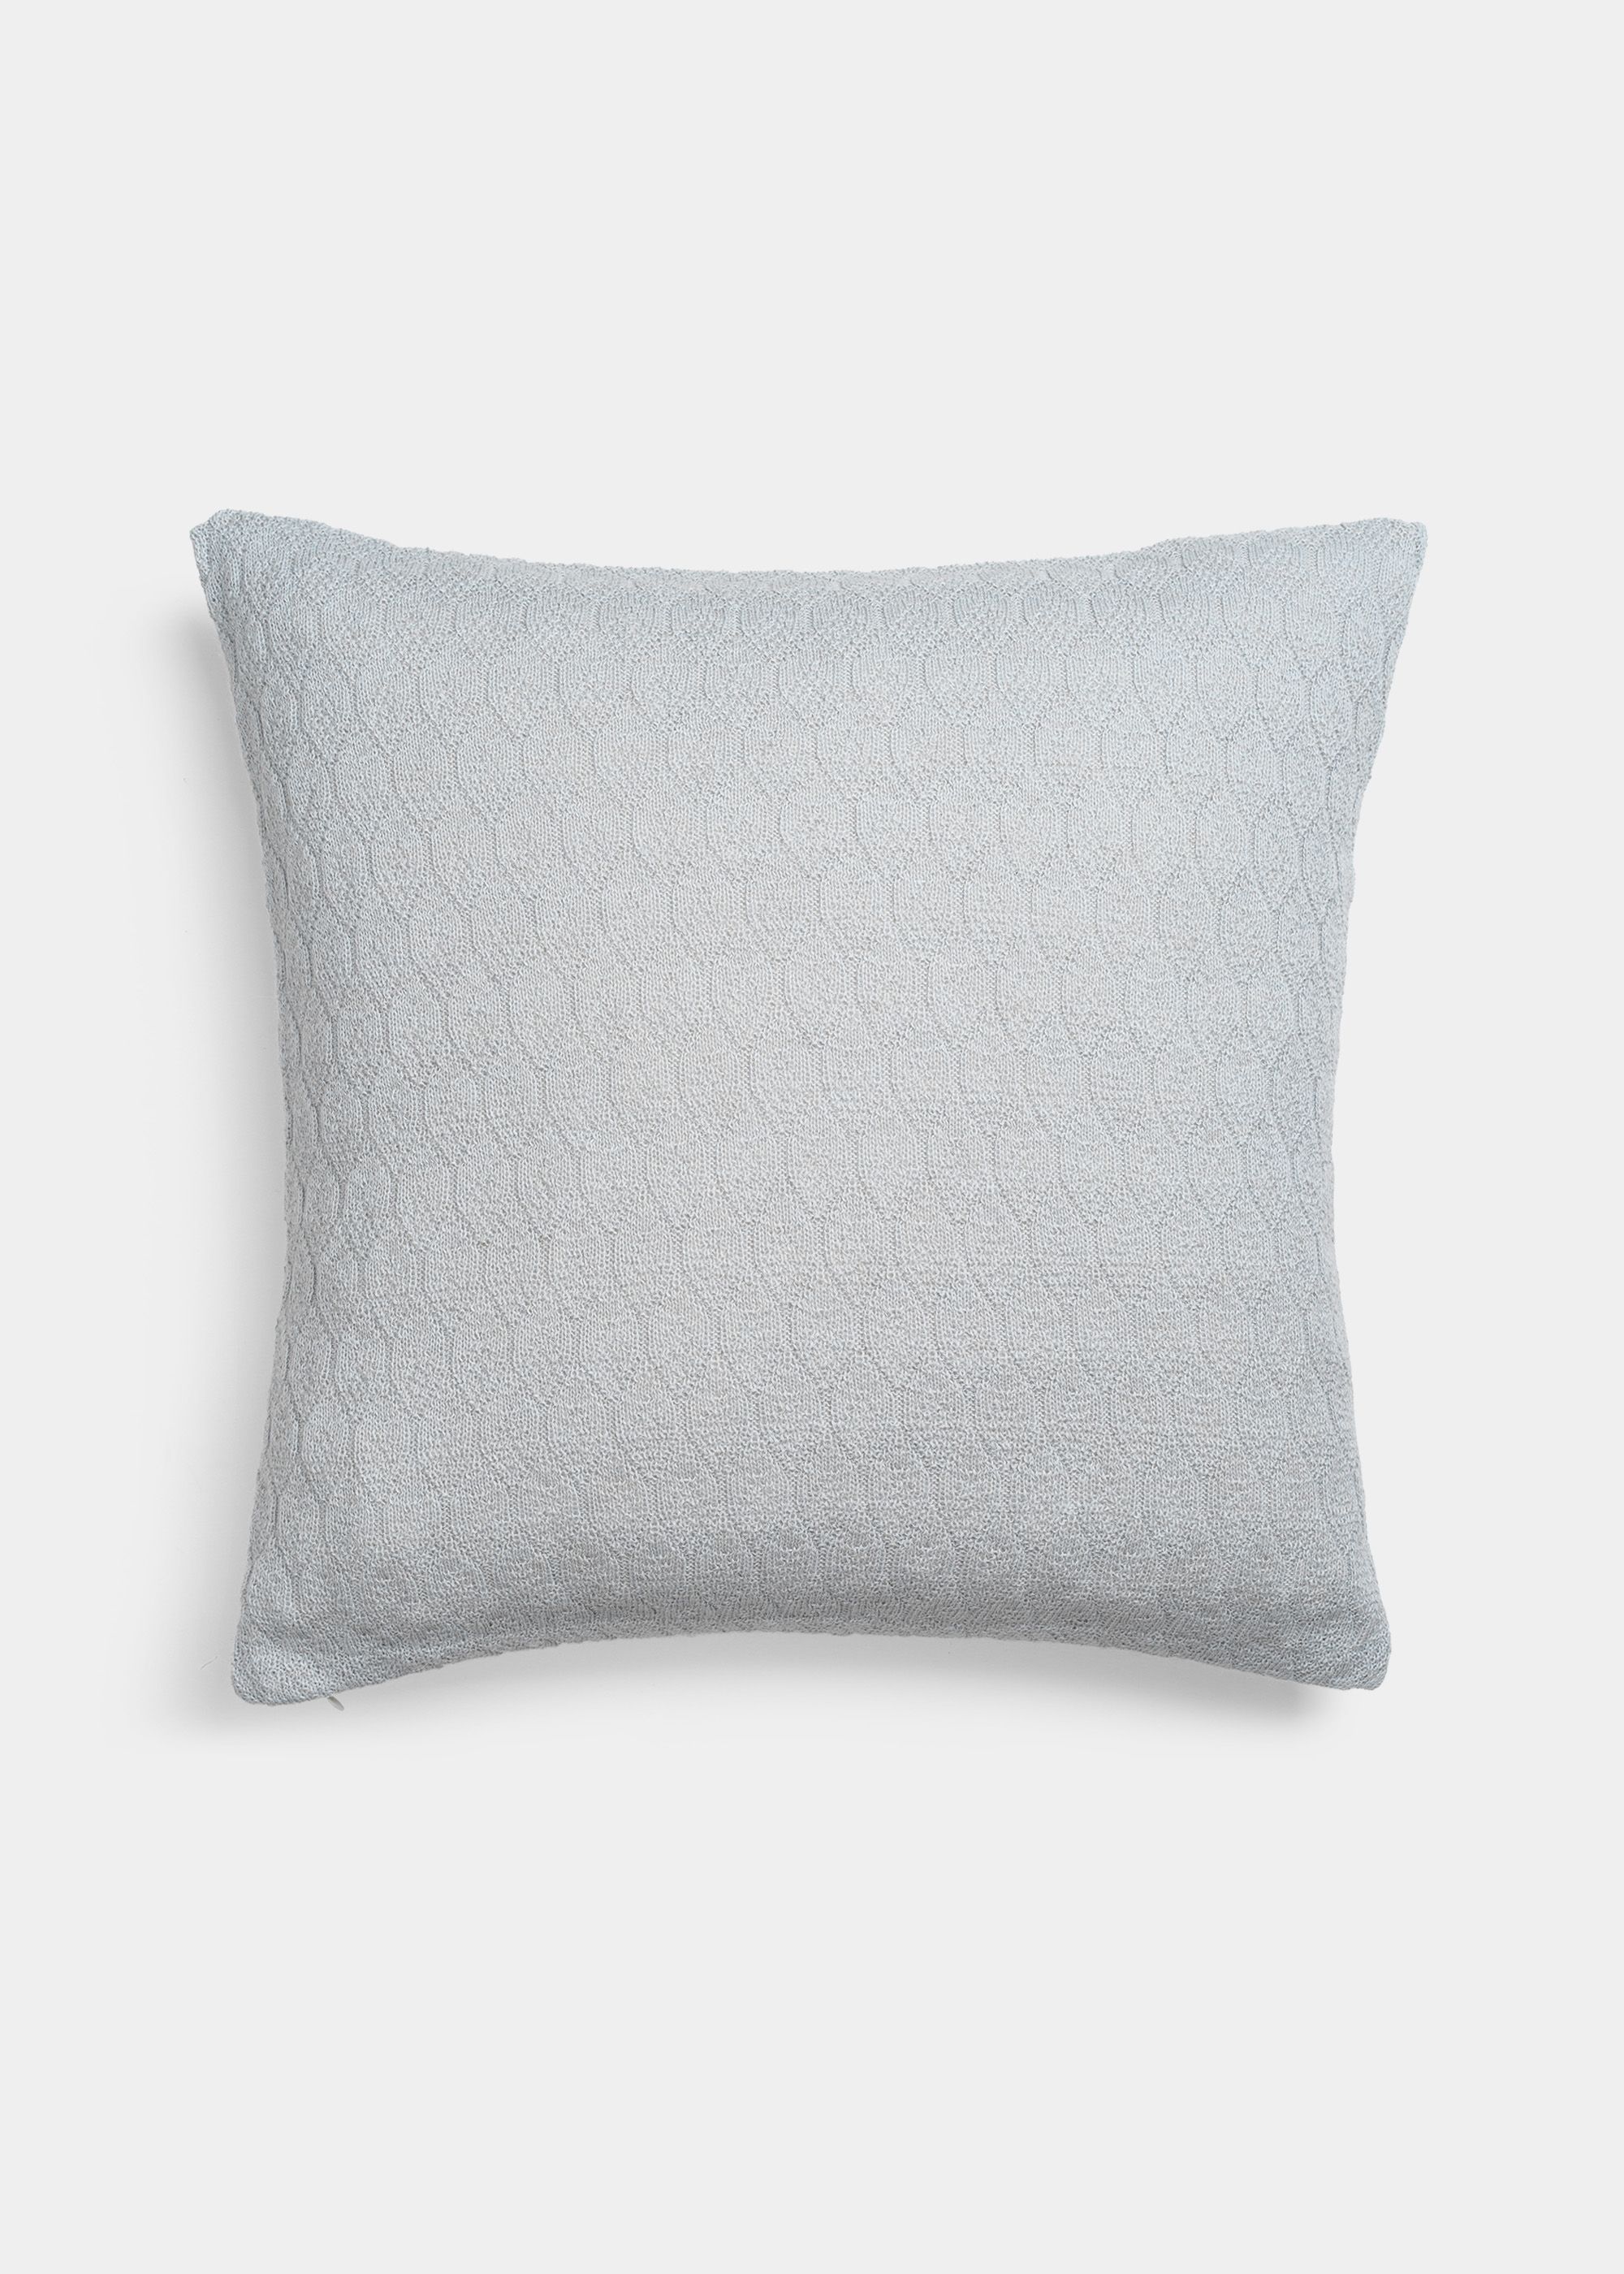 Cushions - Raul pillow (50x50)